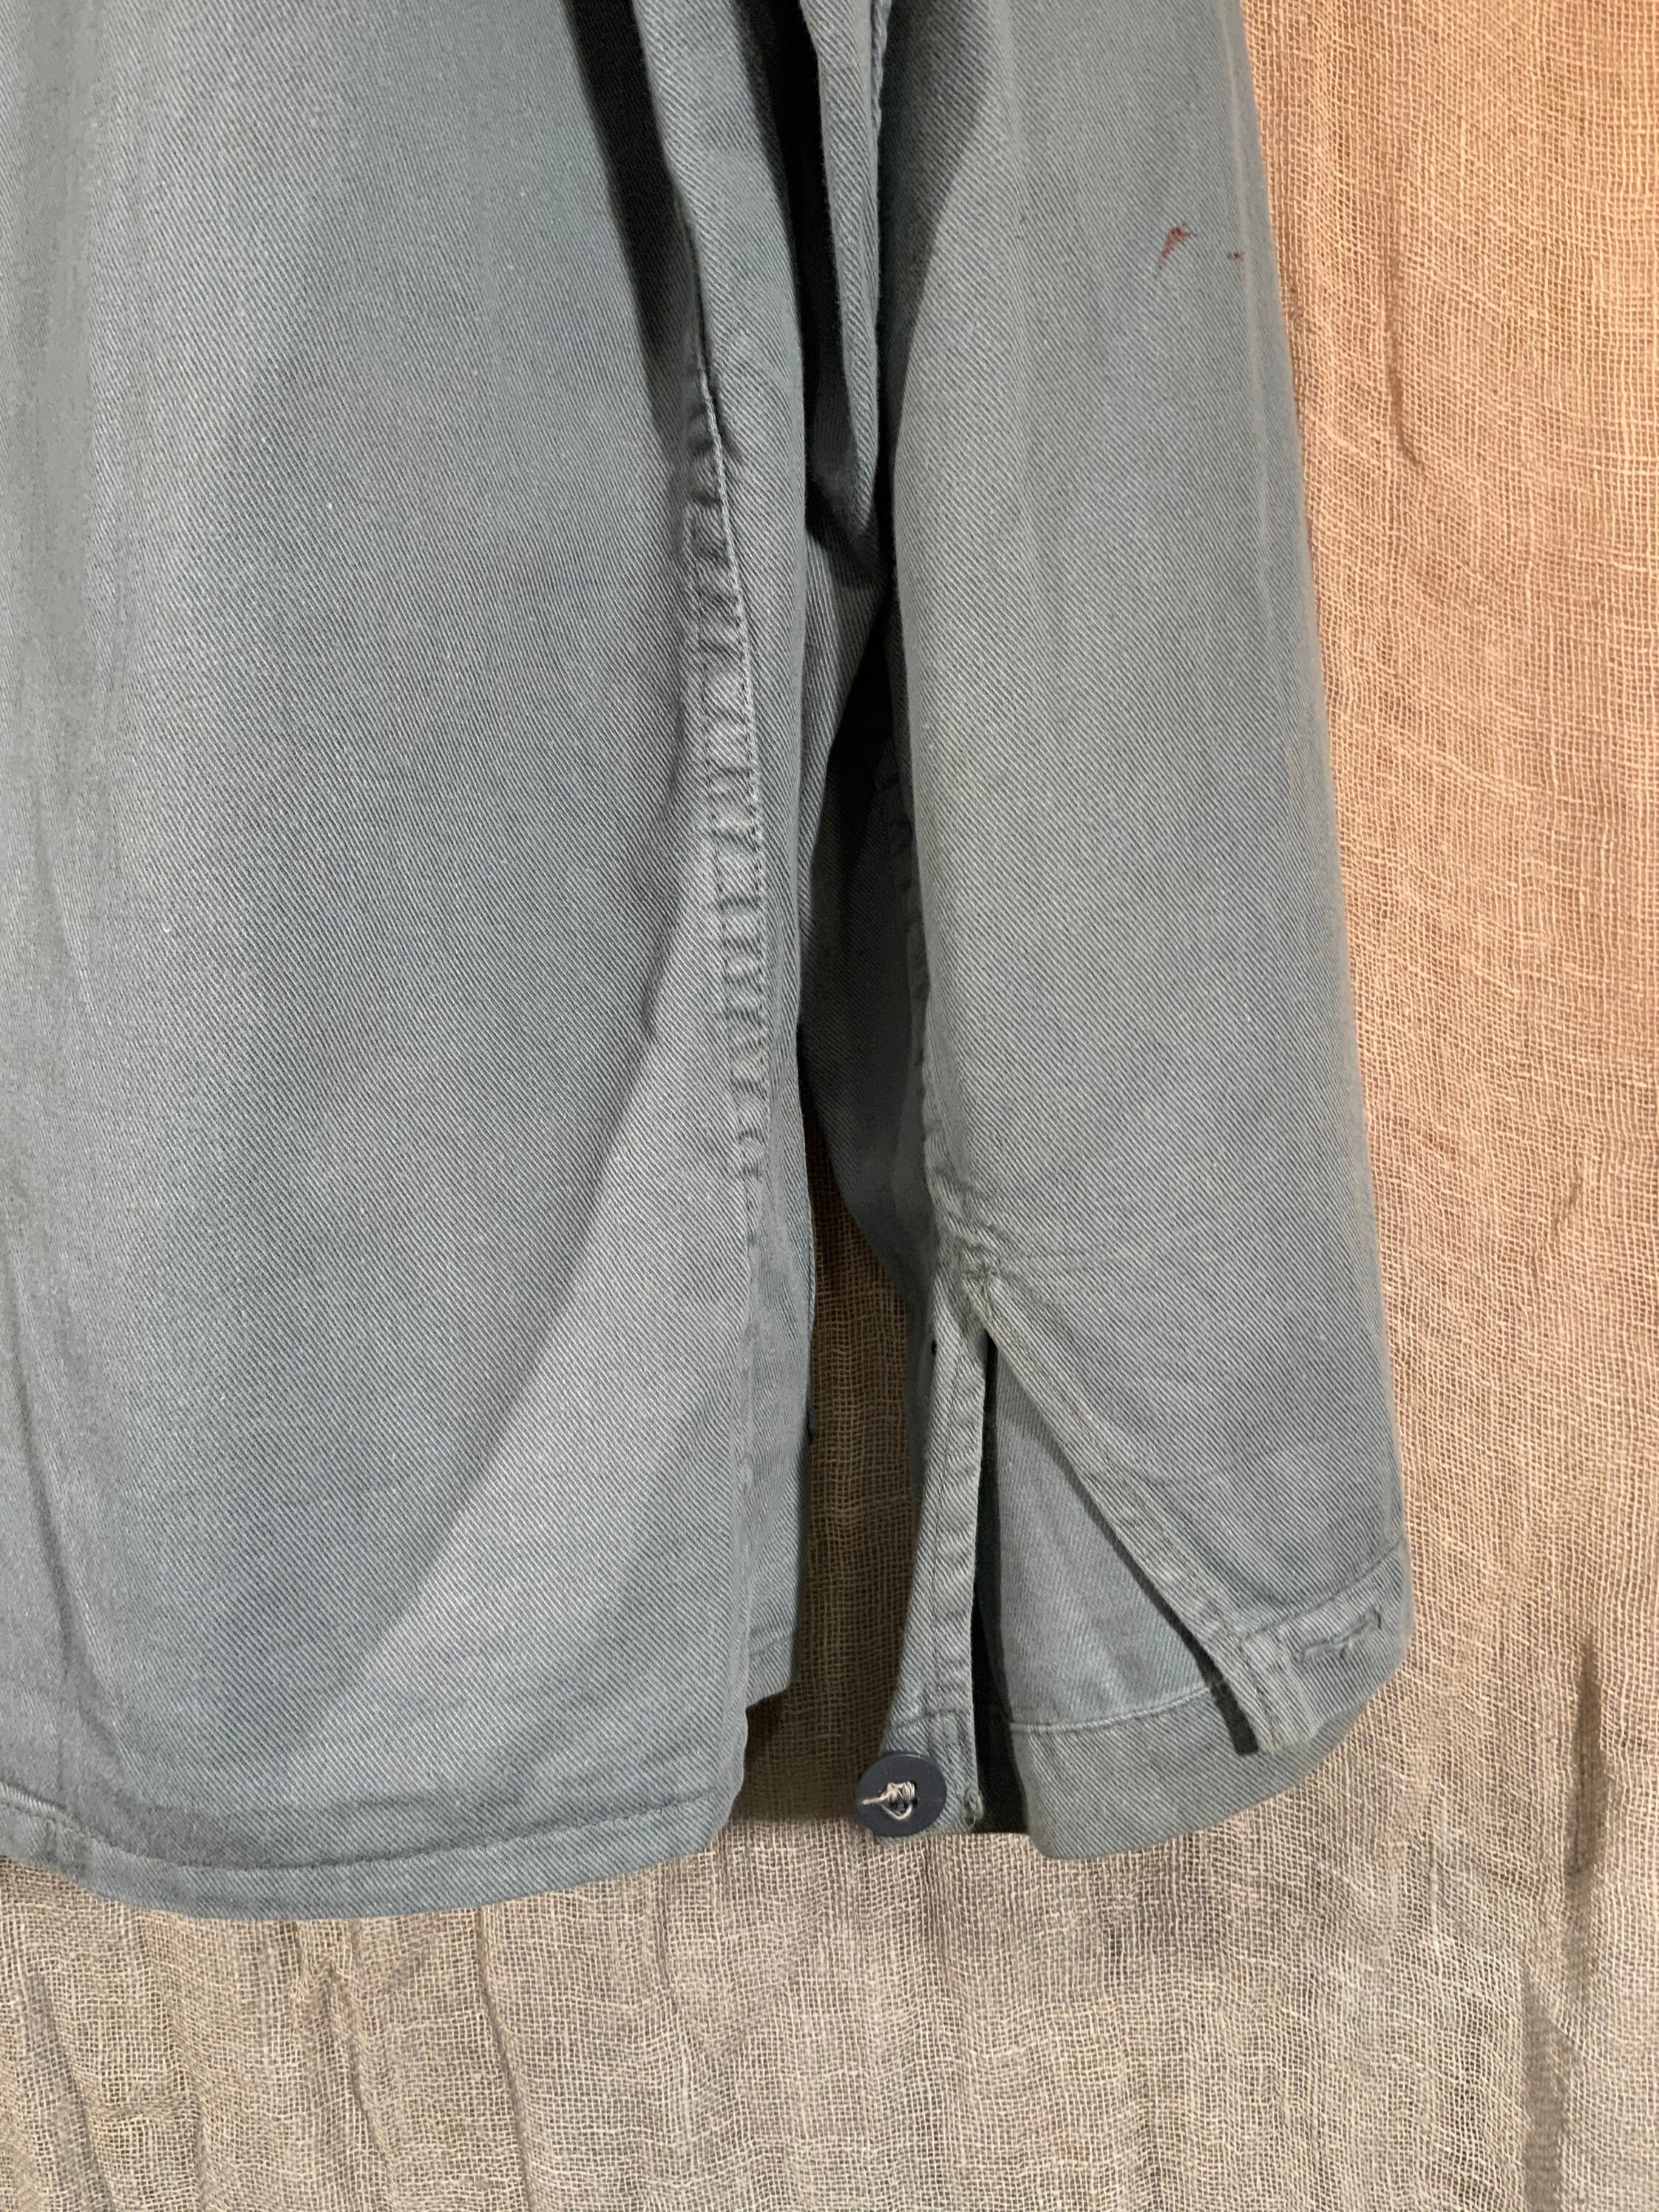 1970s kaki green grey chore shirt jacket in cotton drill | Etsy